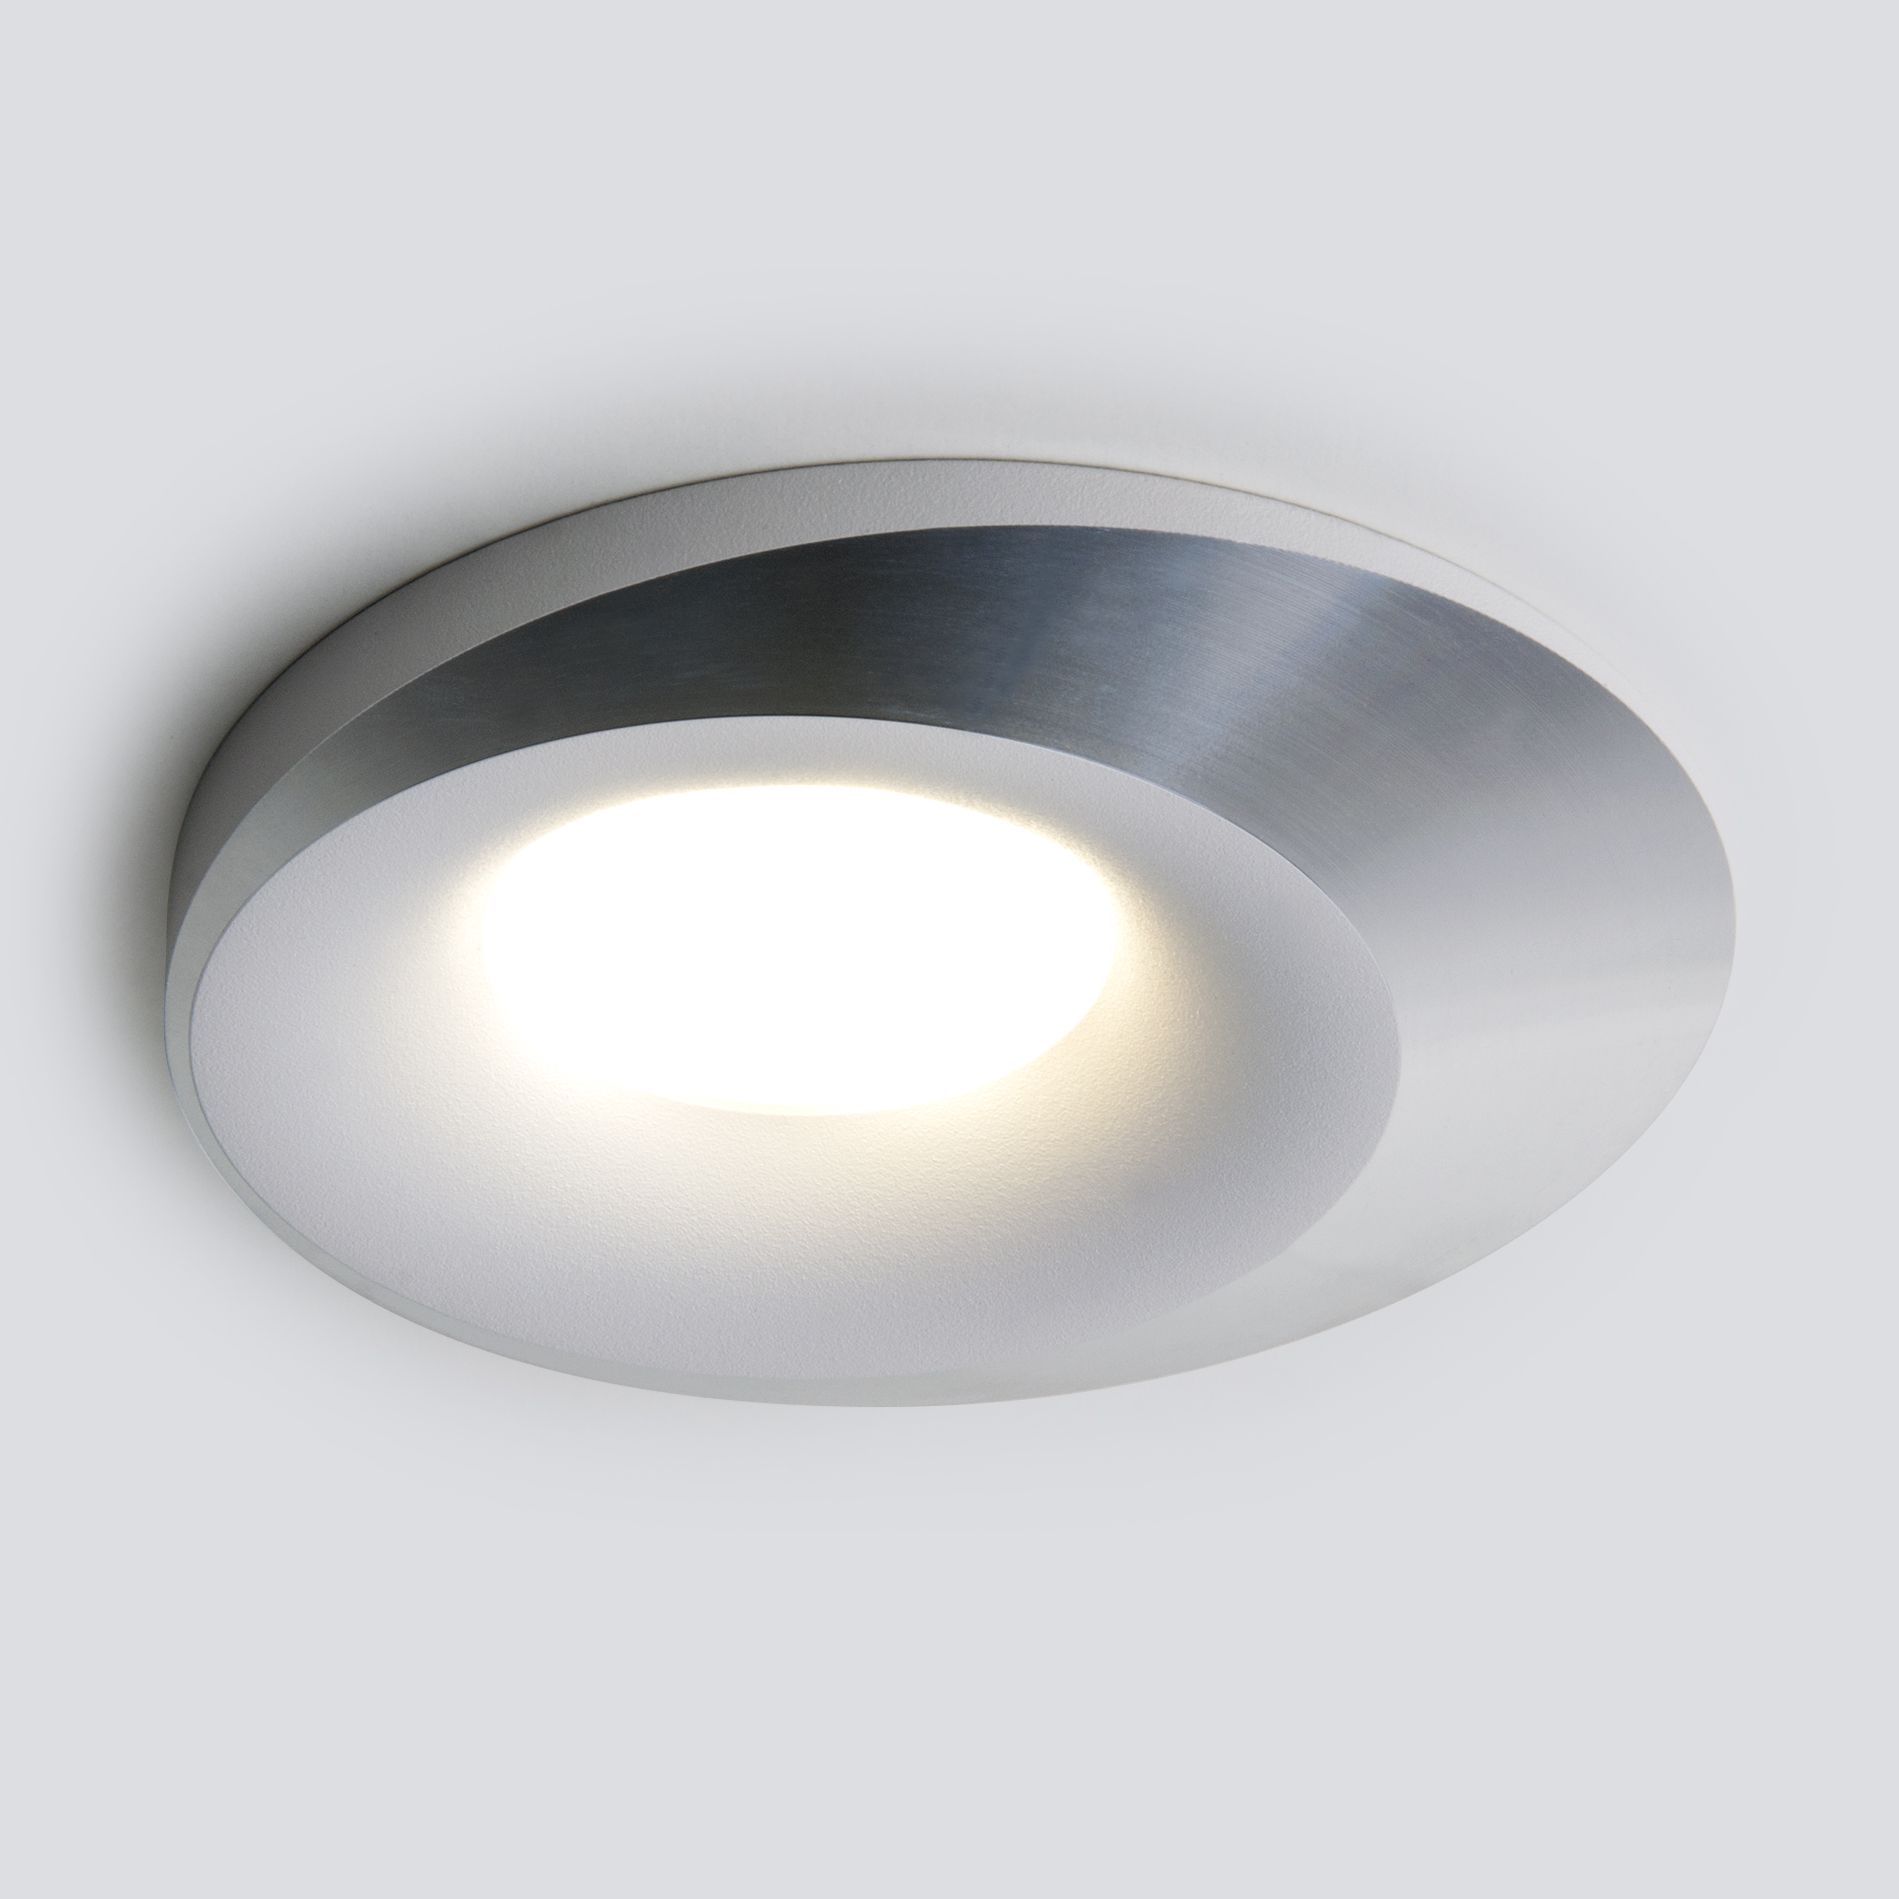 Встраиваемый точечный светильник 124 MR16 белый/серебро 124 MR16